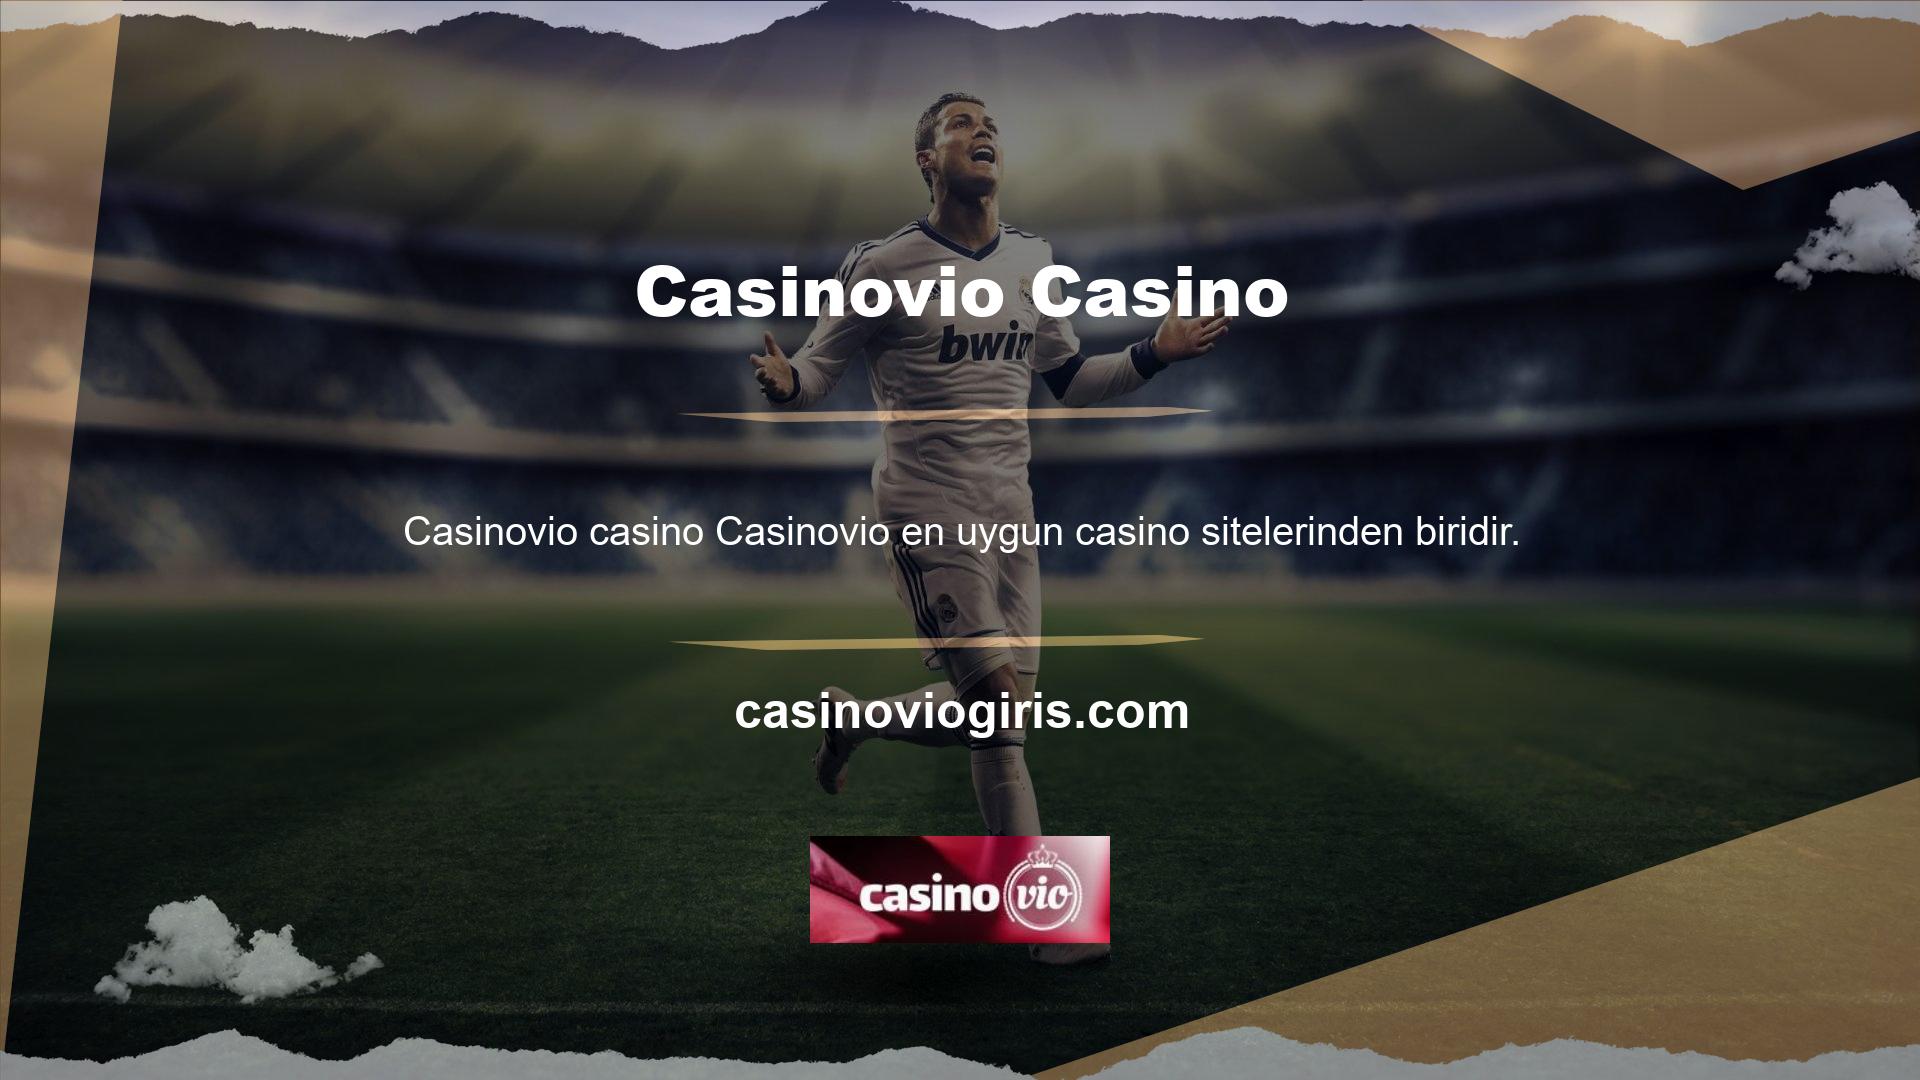 Casinovio ve Casino'nun kullanımı kolay, samimi, renkli ve canlıdır